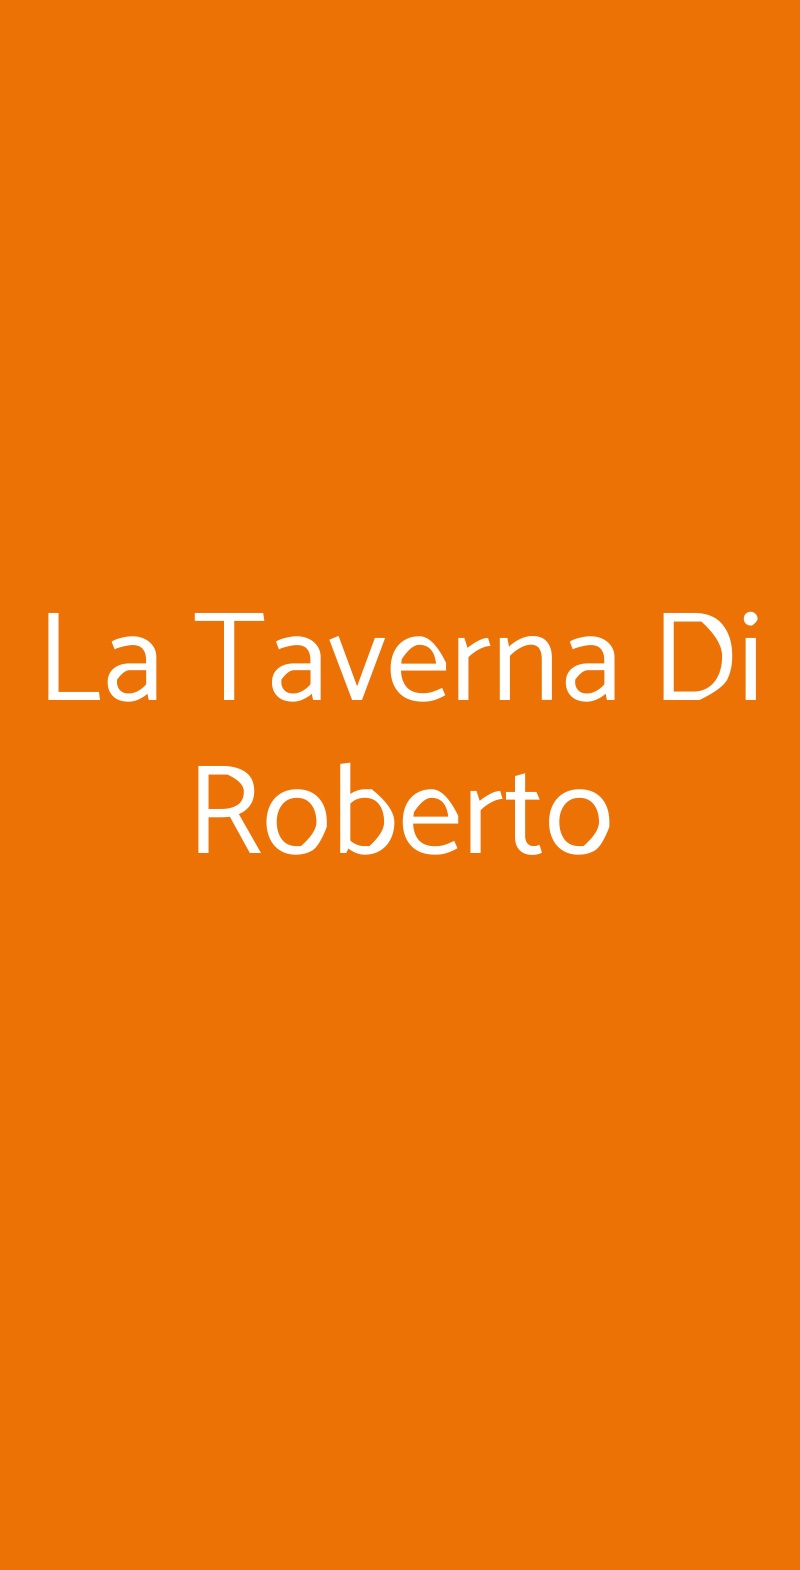 La Taverna Di Roberto Bologna menù 1 pagina